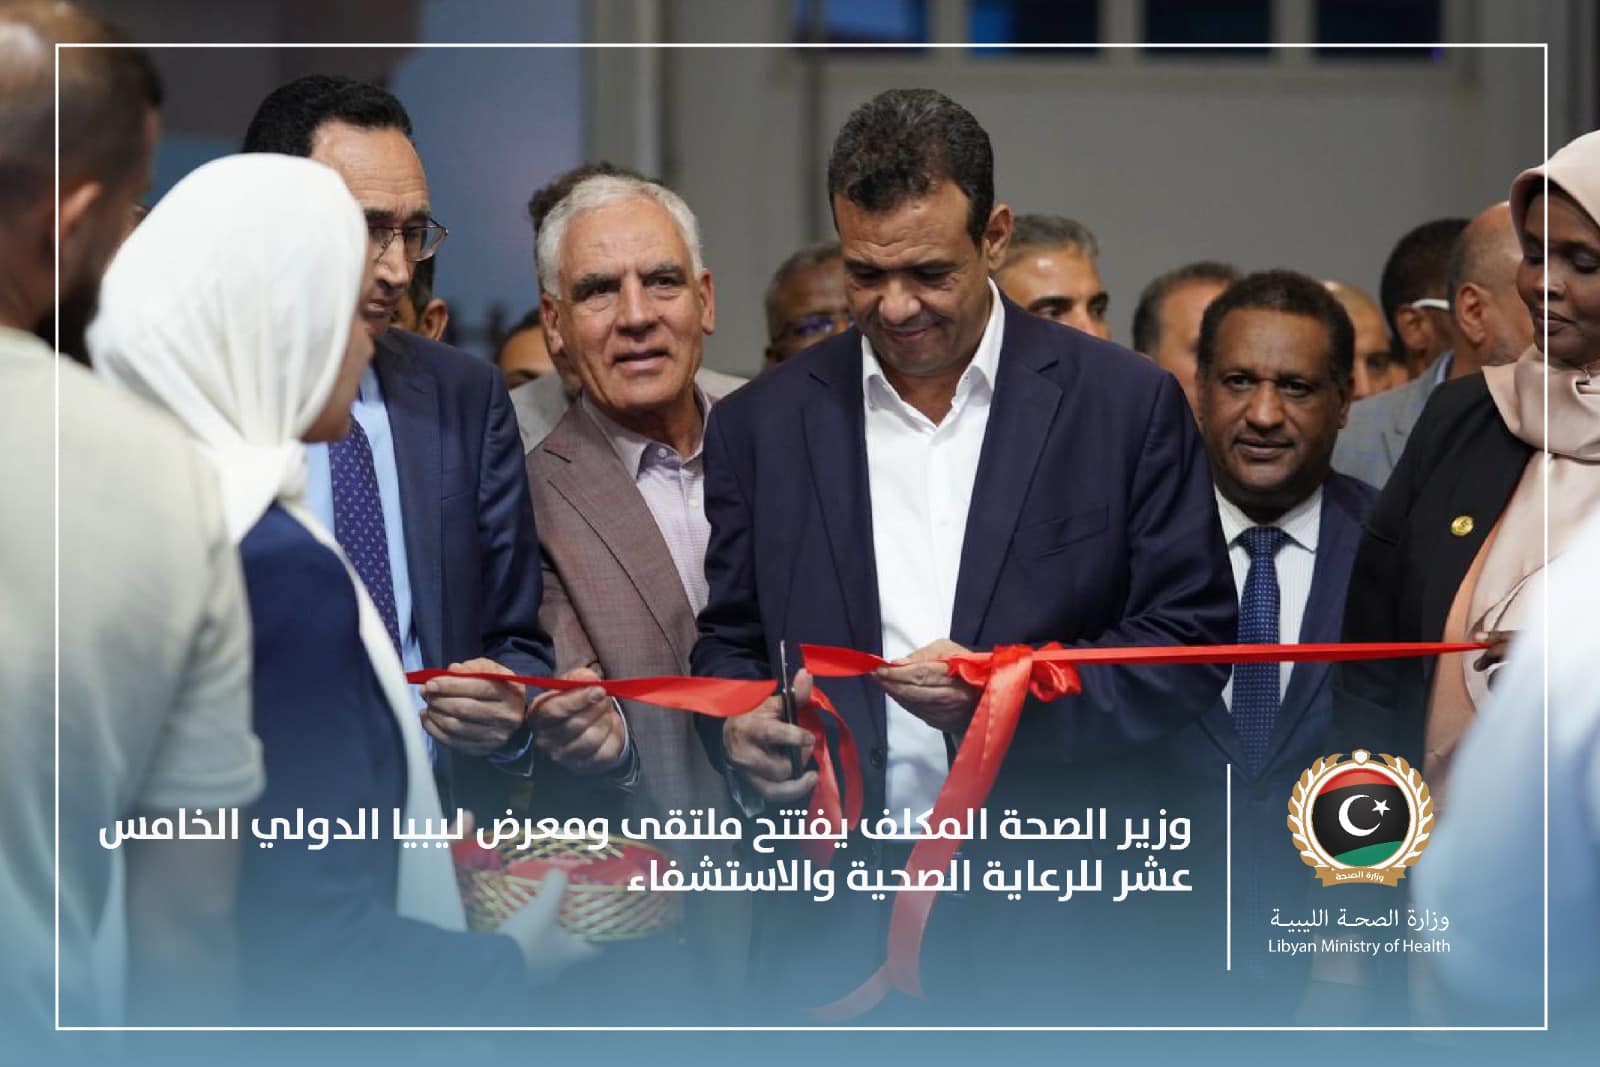  أبوجناح يطلق مبادرة الطبيب الليبي خلال ملتقى ومعرض ليبيا الدولي للرعاية الصحية والاستشفاء. 